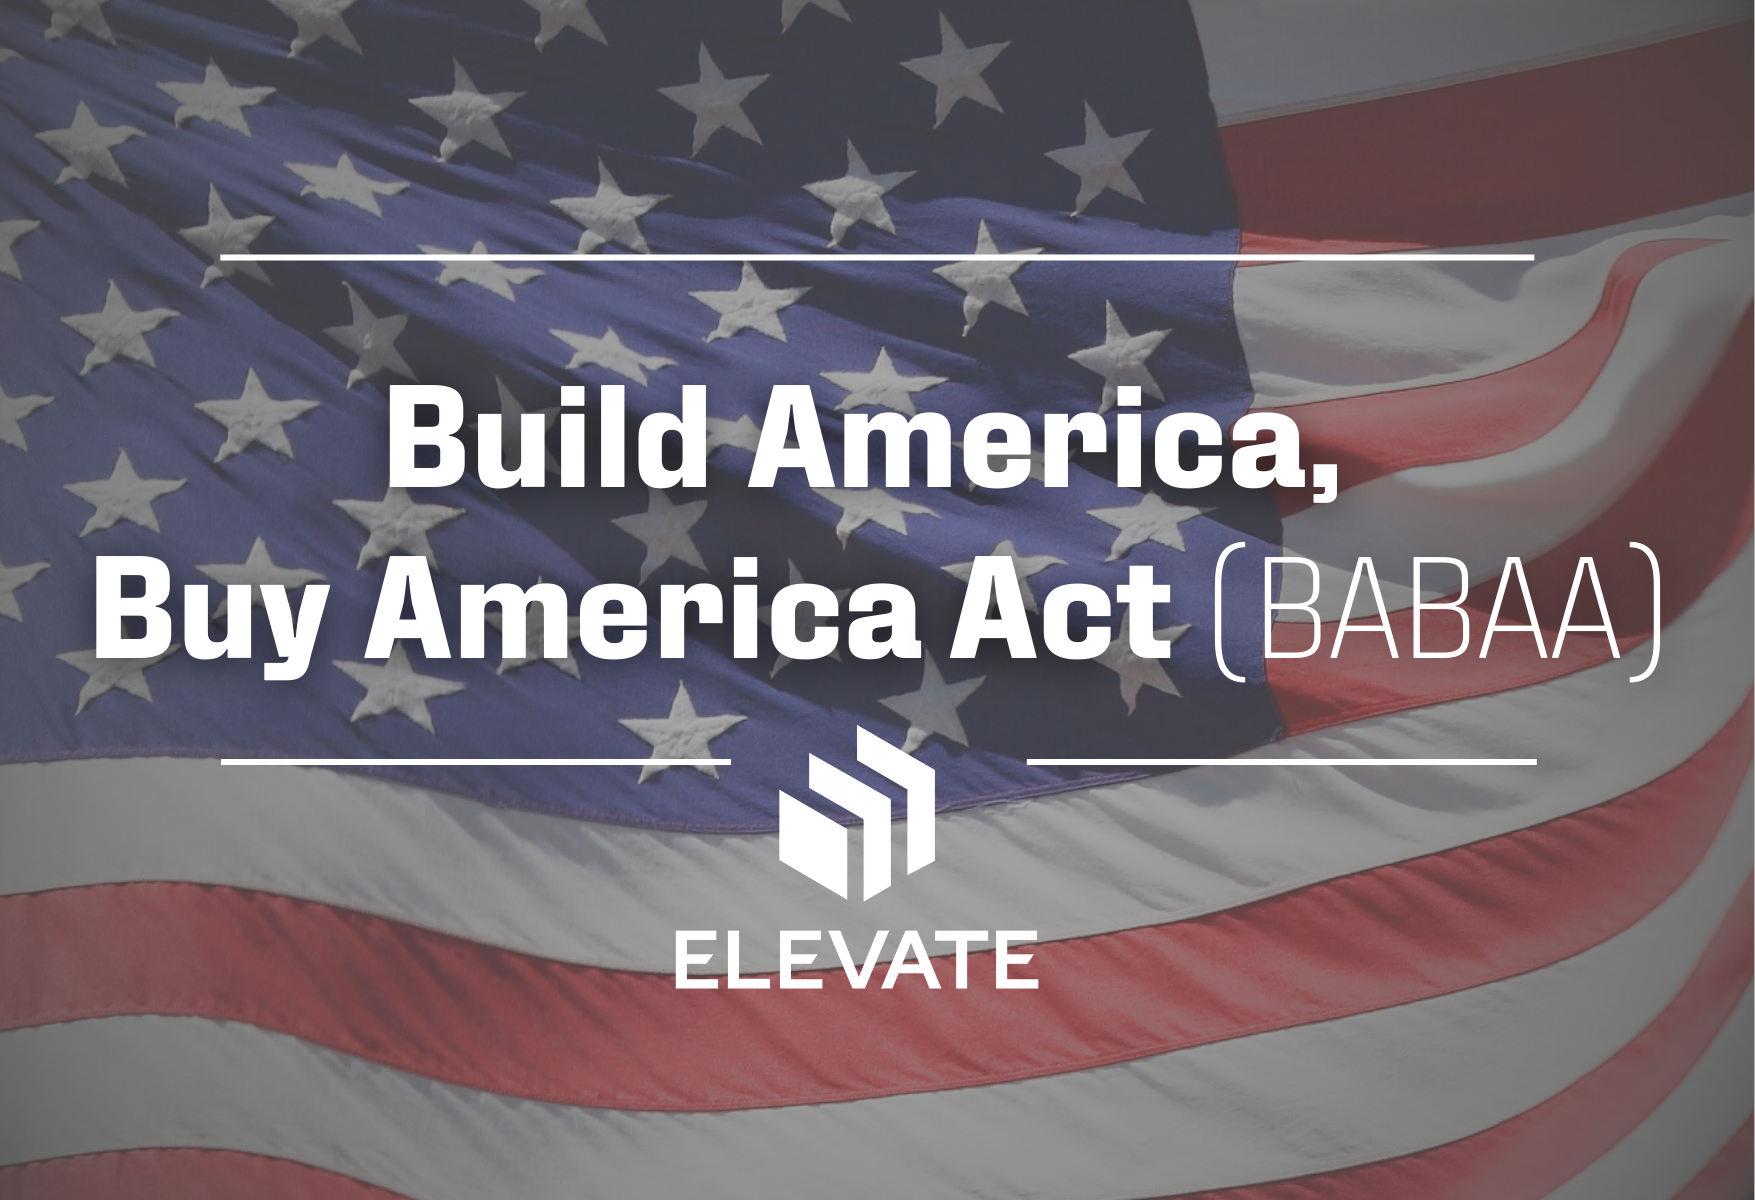 Build America, Buy America Act (BABAA)